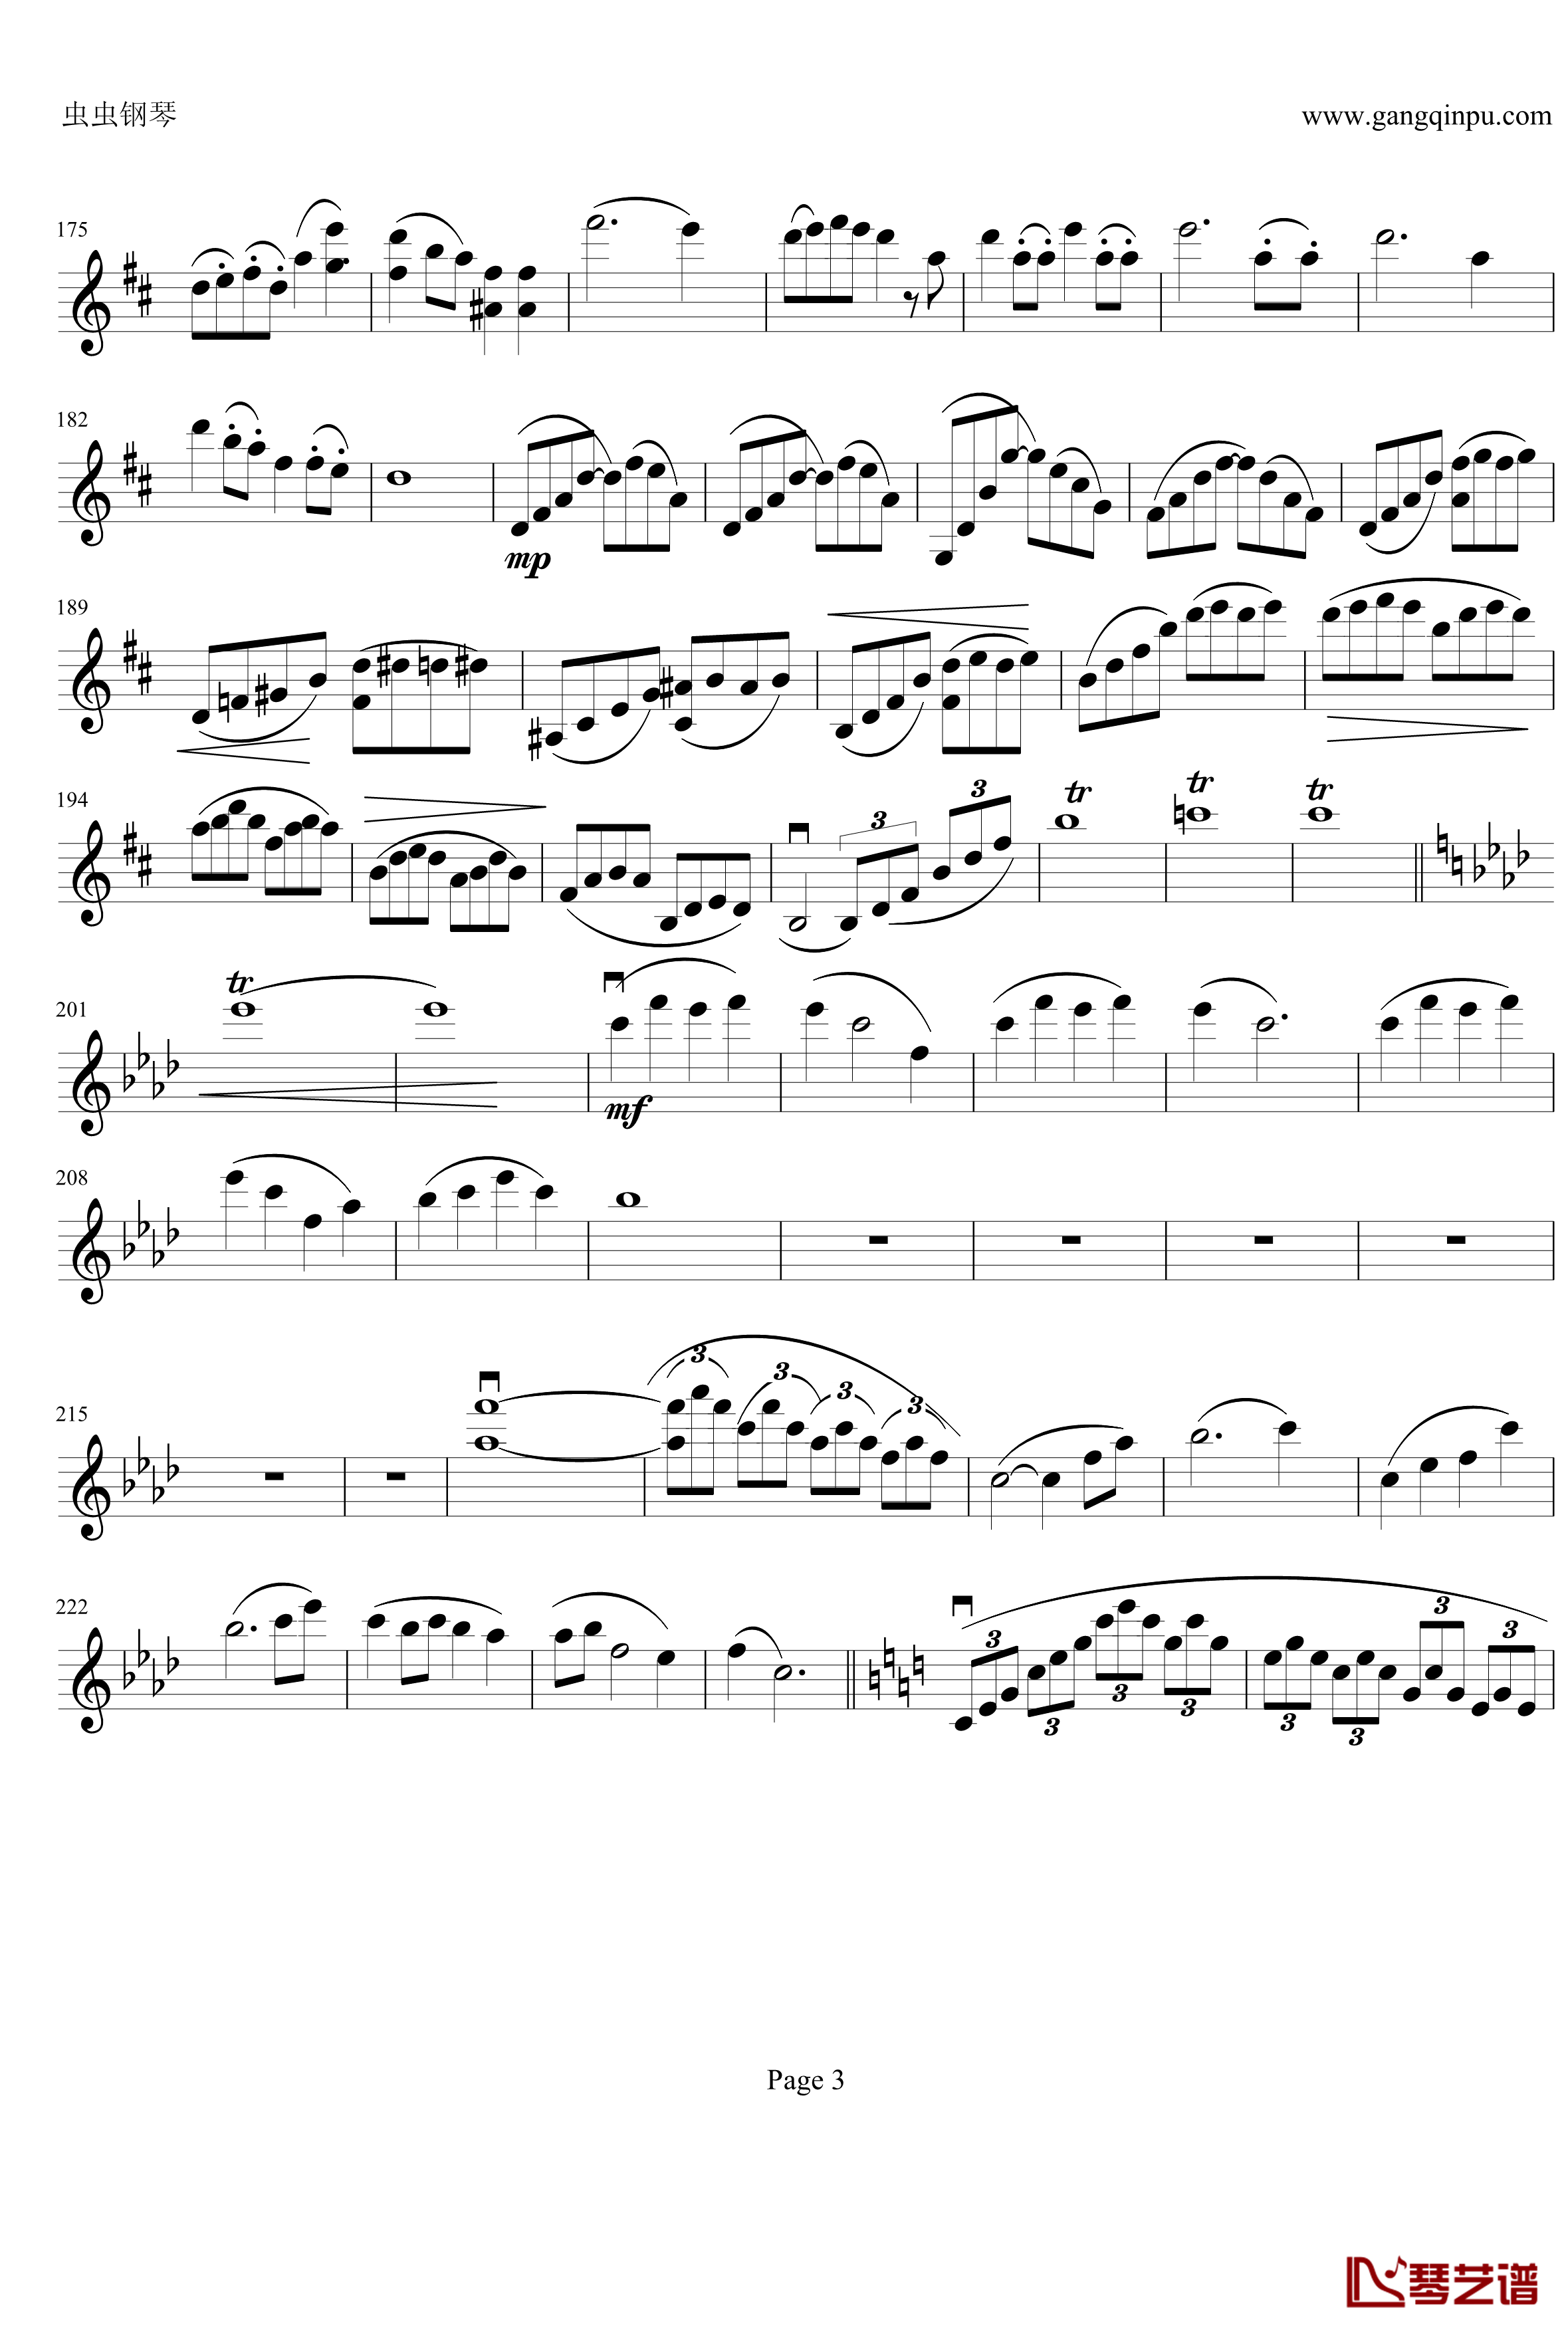 云南风情钢琴谱-第一乐章-b小调小提琴协奏曲-项道荣